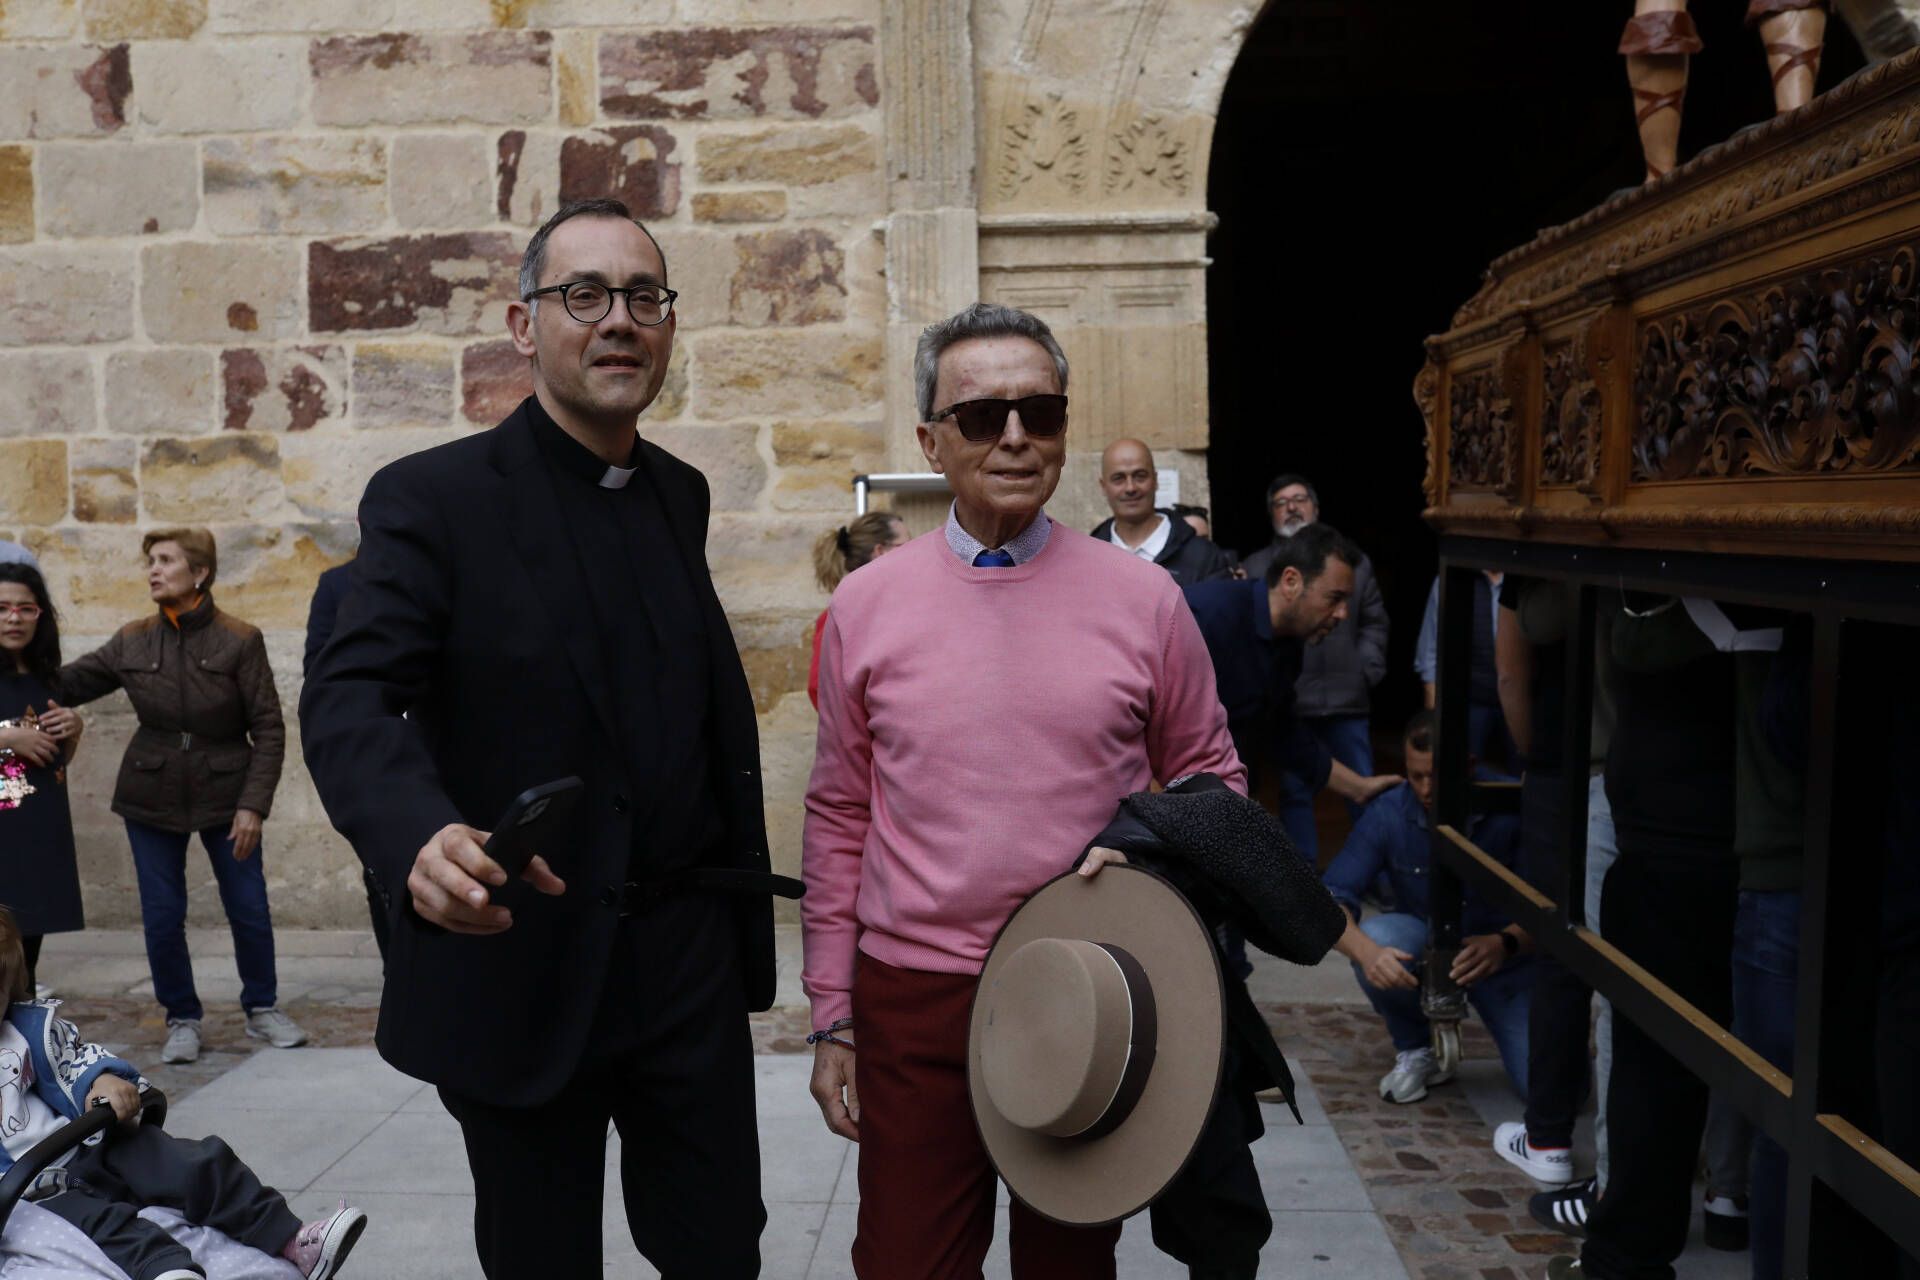 Inauguración del I Encuentro internacional de capellanes y sacerdotes taurinos, en Zamora, con la presencia del maestro José Ortega Cano.